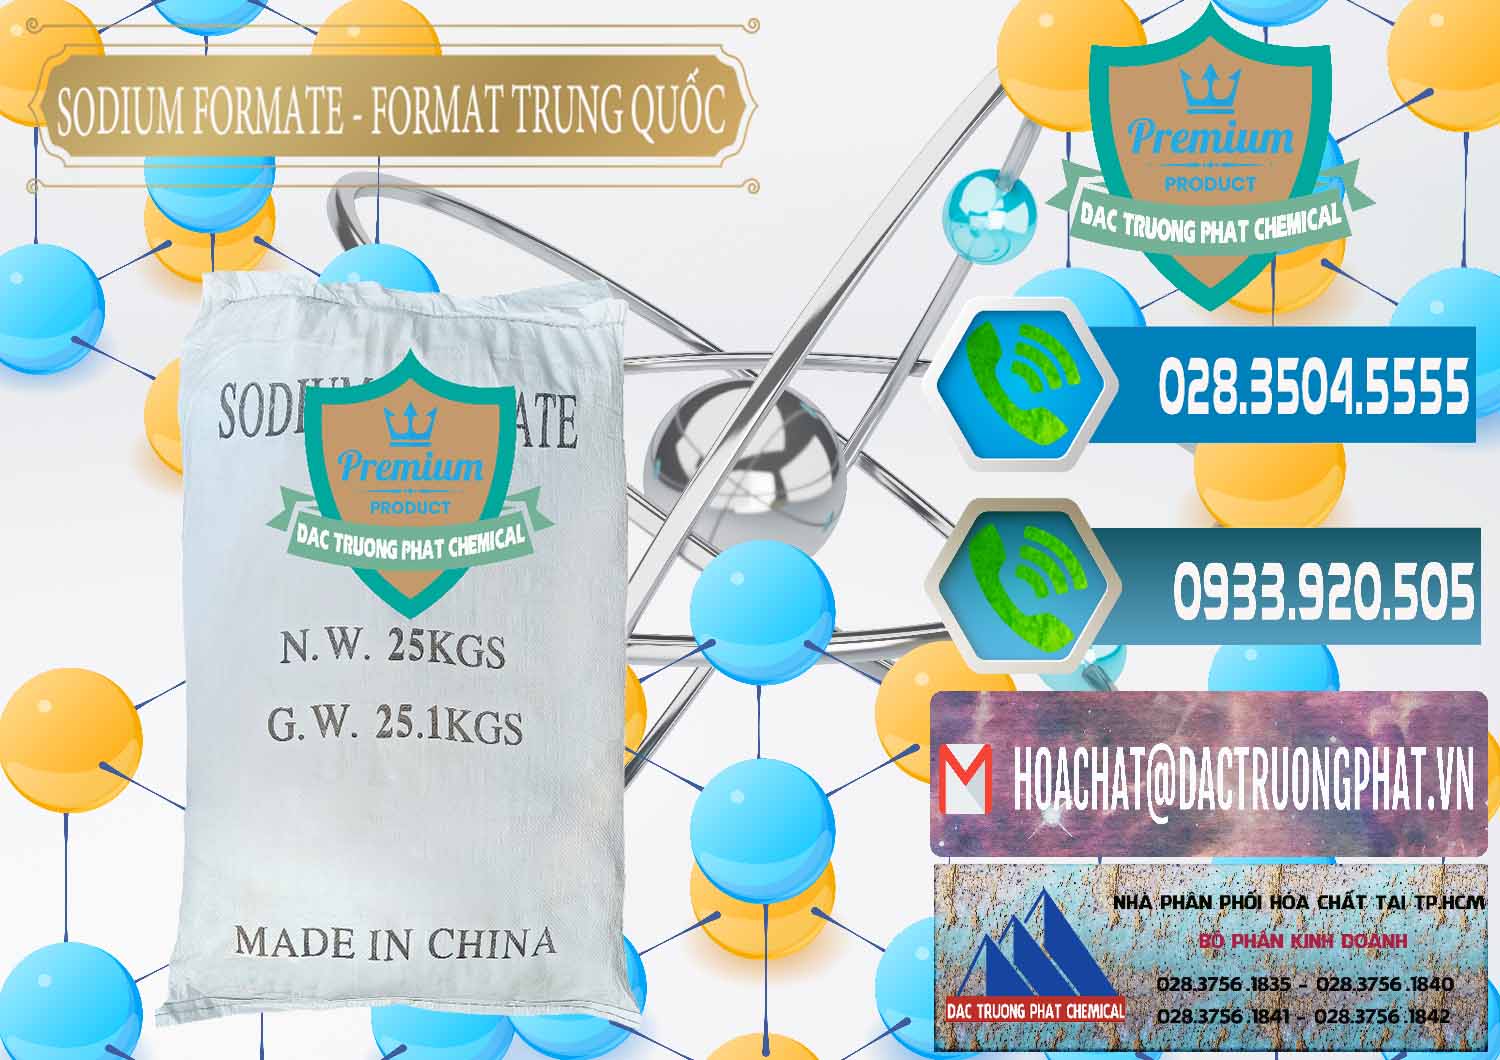 Chuyên bán - cung ứng Sodium Formate - Natri Format Trung Quốc China - 0142 - Cty kinh doanh và cung cấp hóa chất tại TP.HCM - congtyhoachat.net